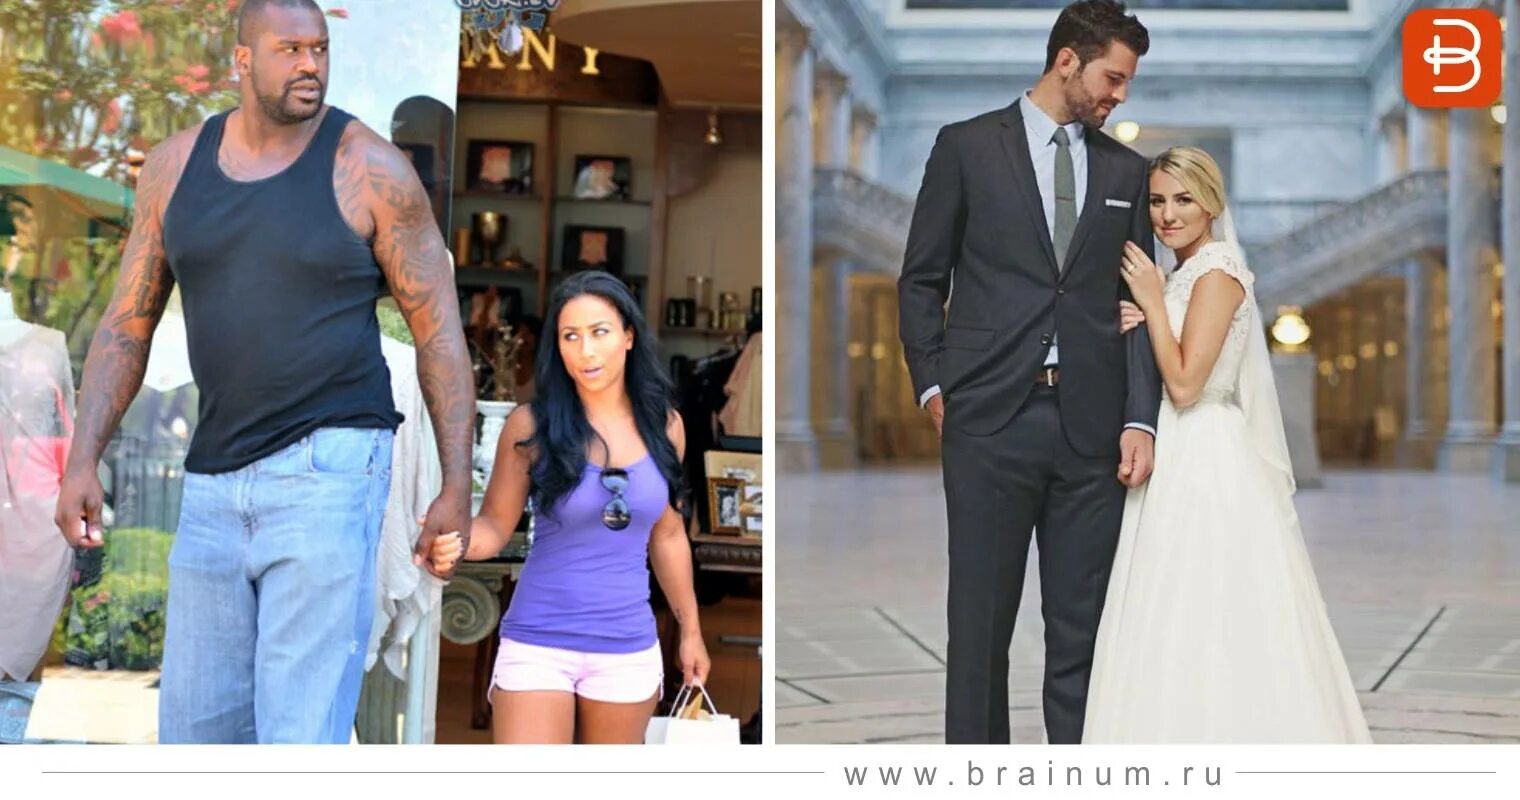 Парням нравятся низкие девушки. Свадьба высокой девушки и низкого парня. Высокий парень и маленькая девушка. Пара очень высокий негр и невысокая женщина. Мужчина выше девушки на 20 см.